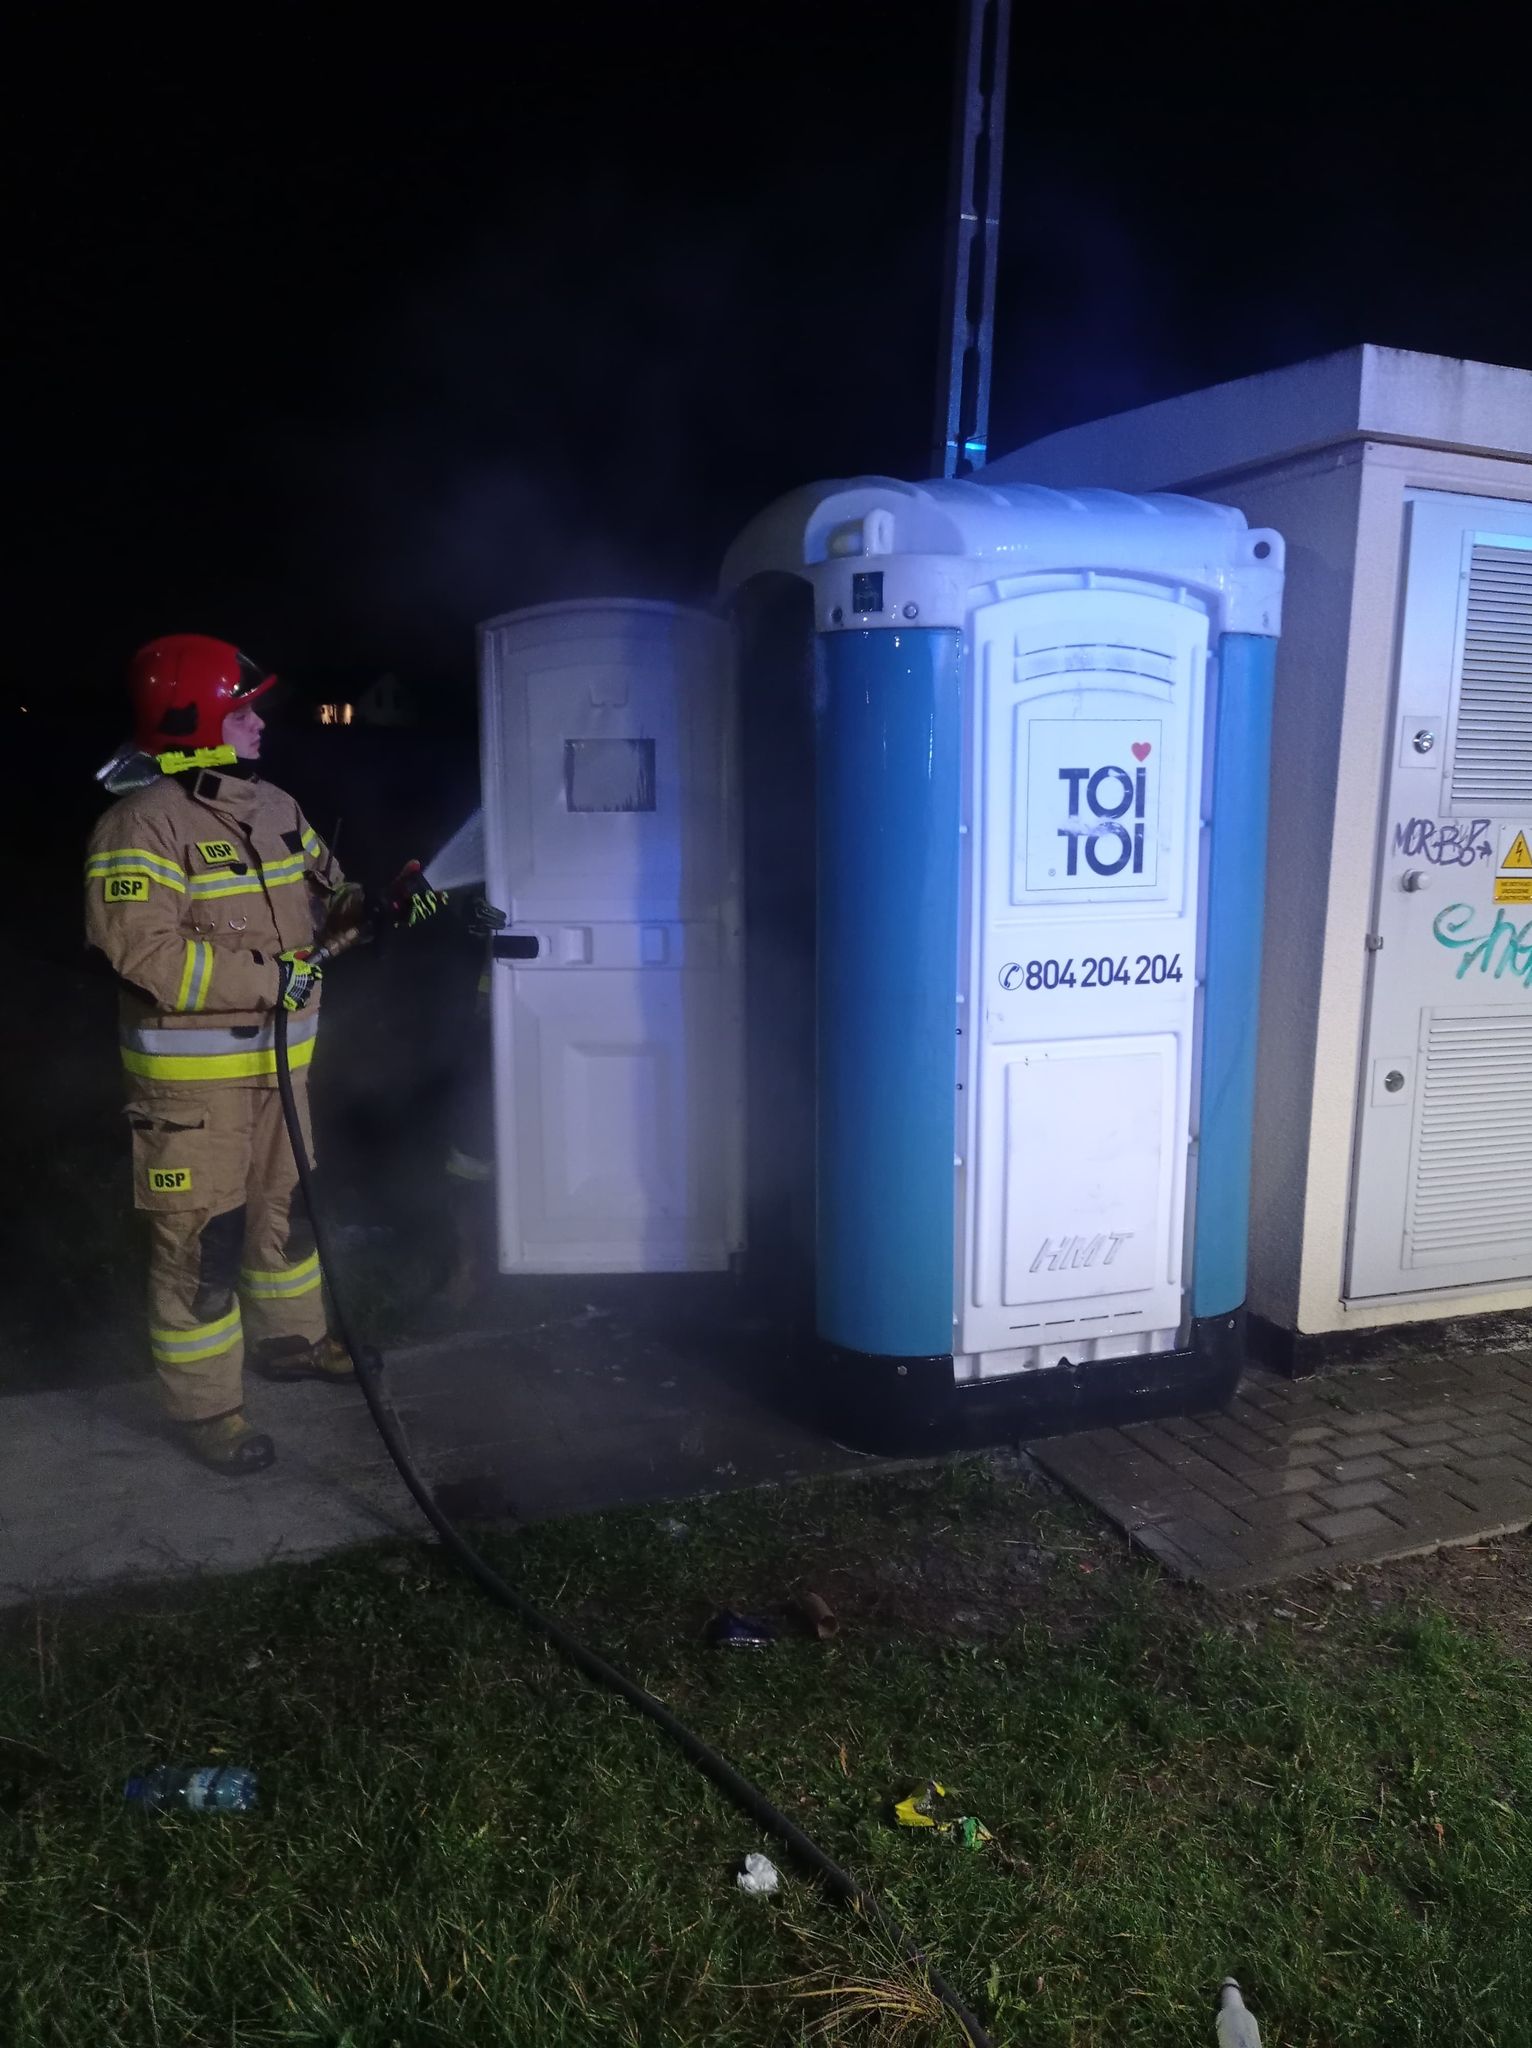 Z przenośnej toalety wydobywał się dym. Strażacy uratowali obiekt przed spaleniem